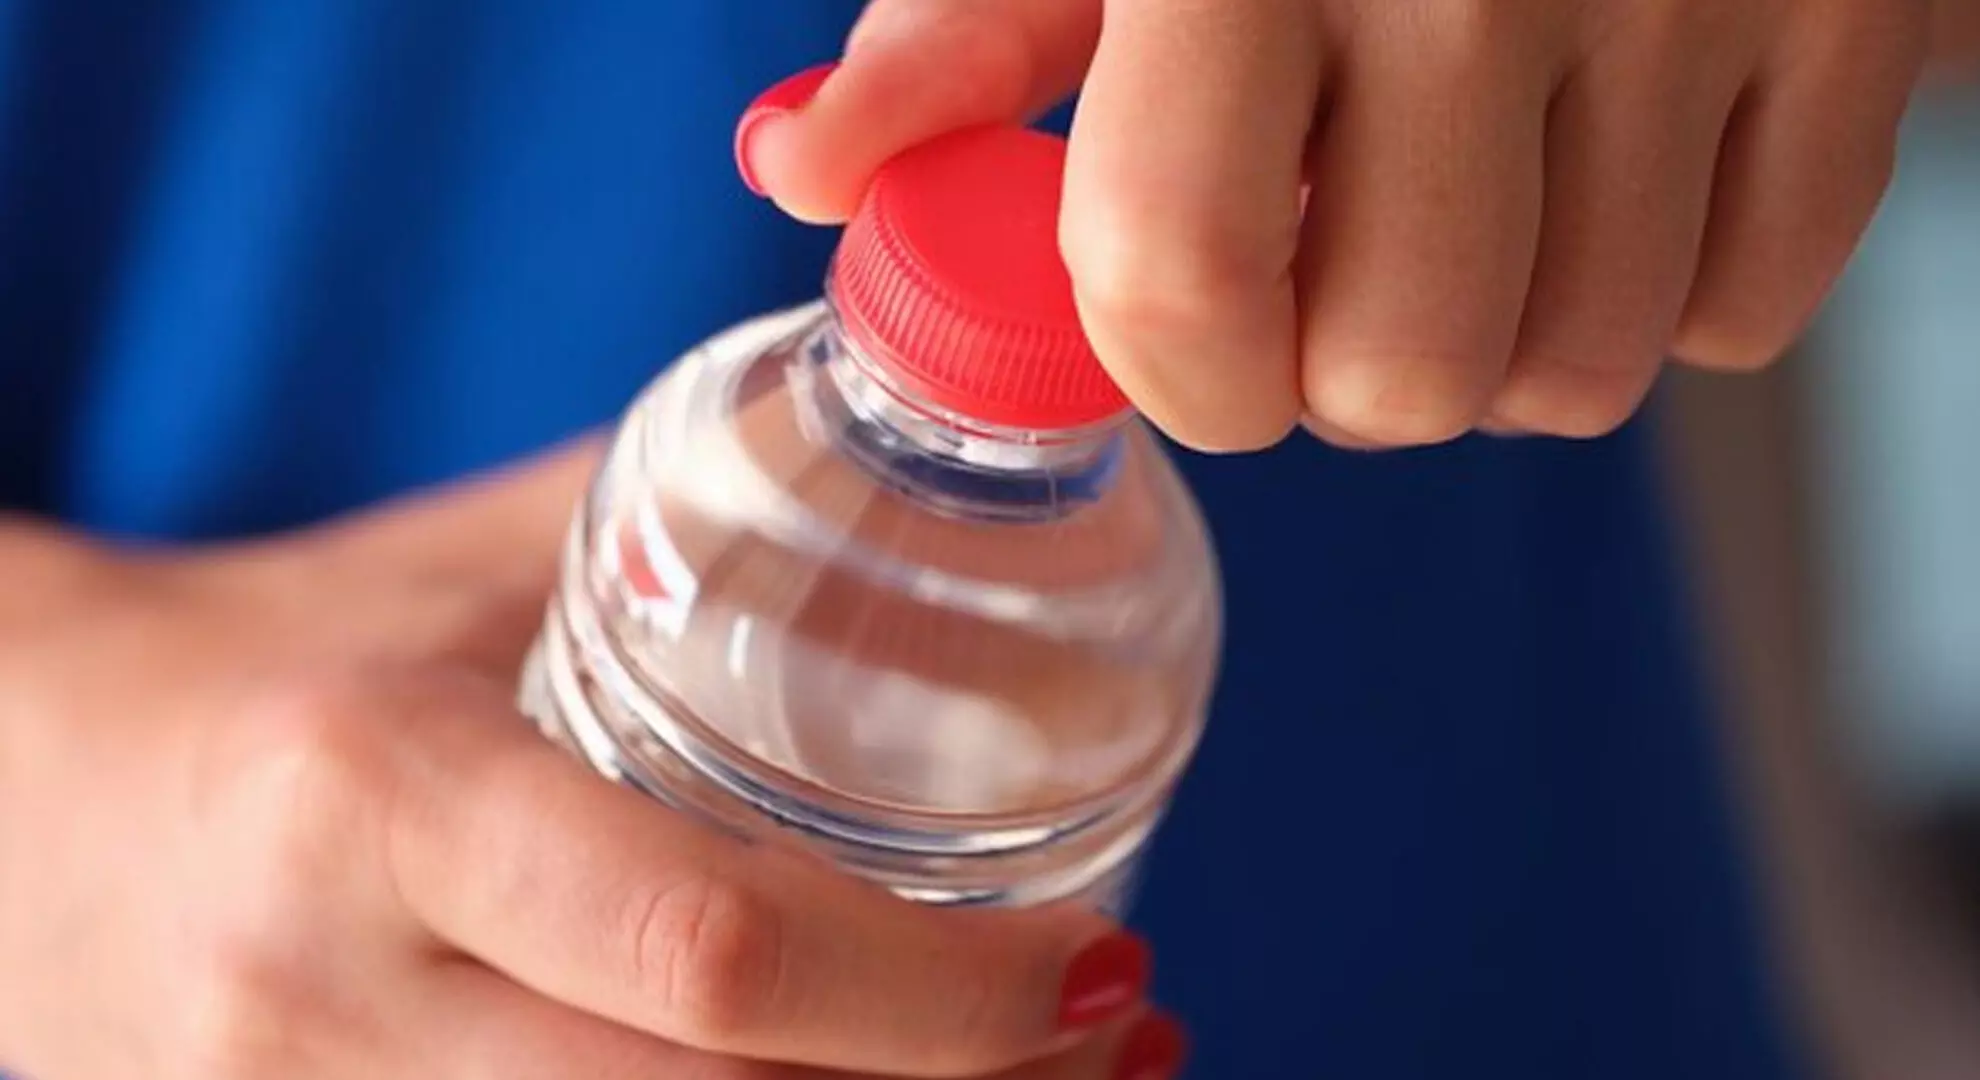 बोतल के ढक्कन के गंदगी को साफ,करने के 3 उपाय